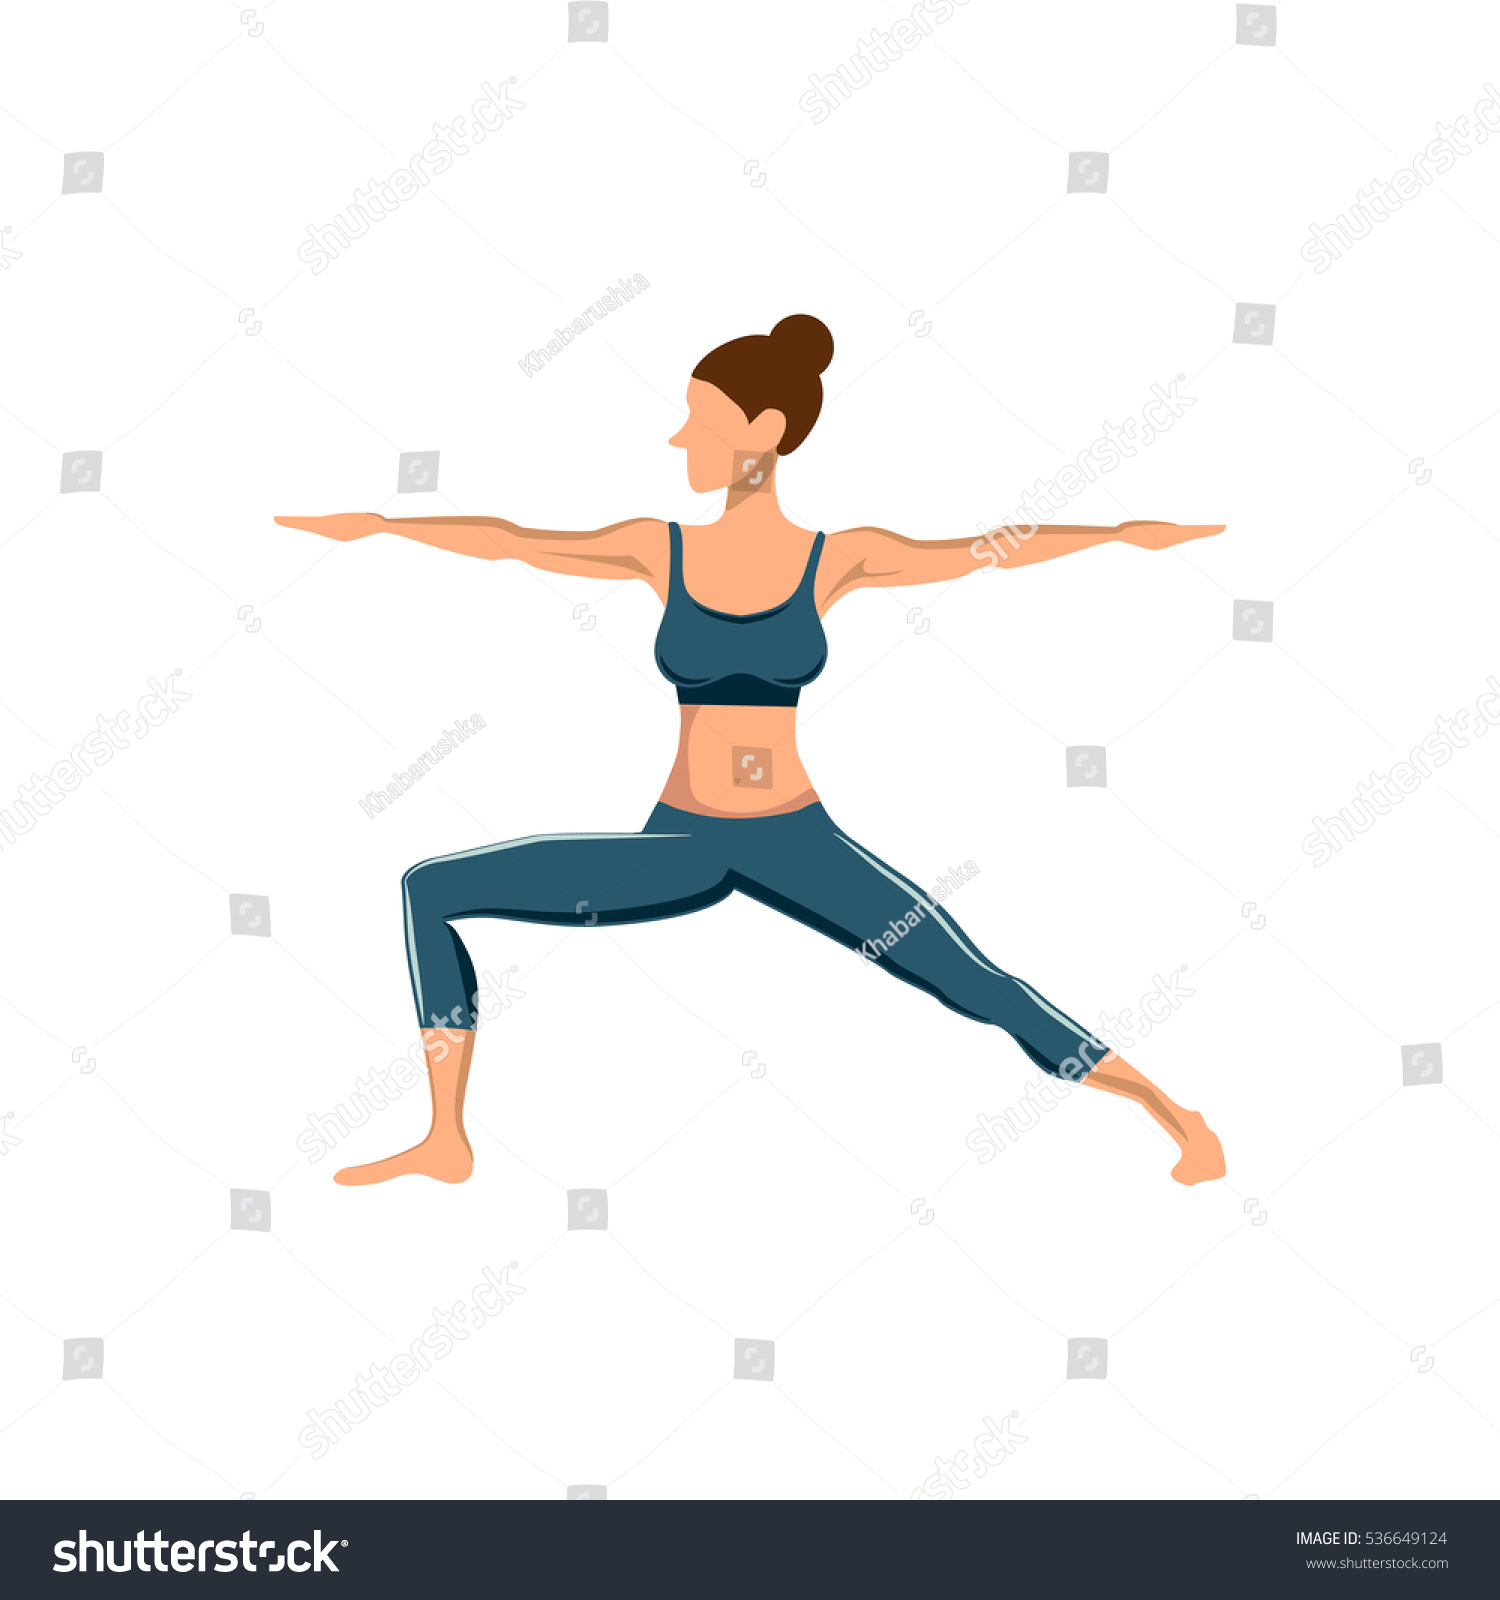 Yoga Pose Women Isolated On White Stock Illustration 536649124 ...